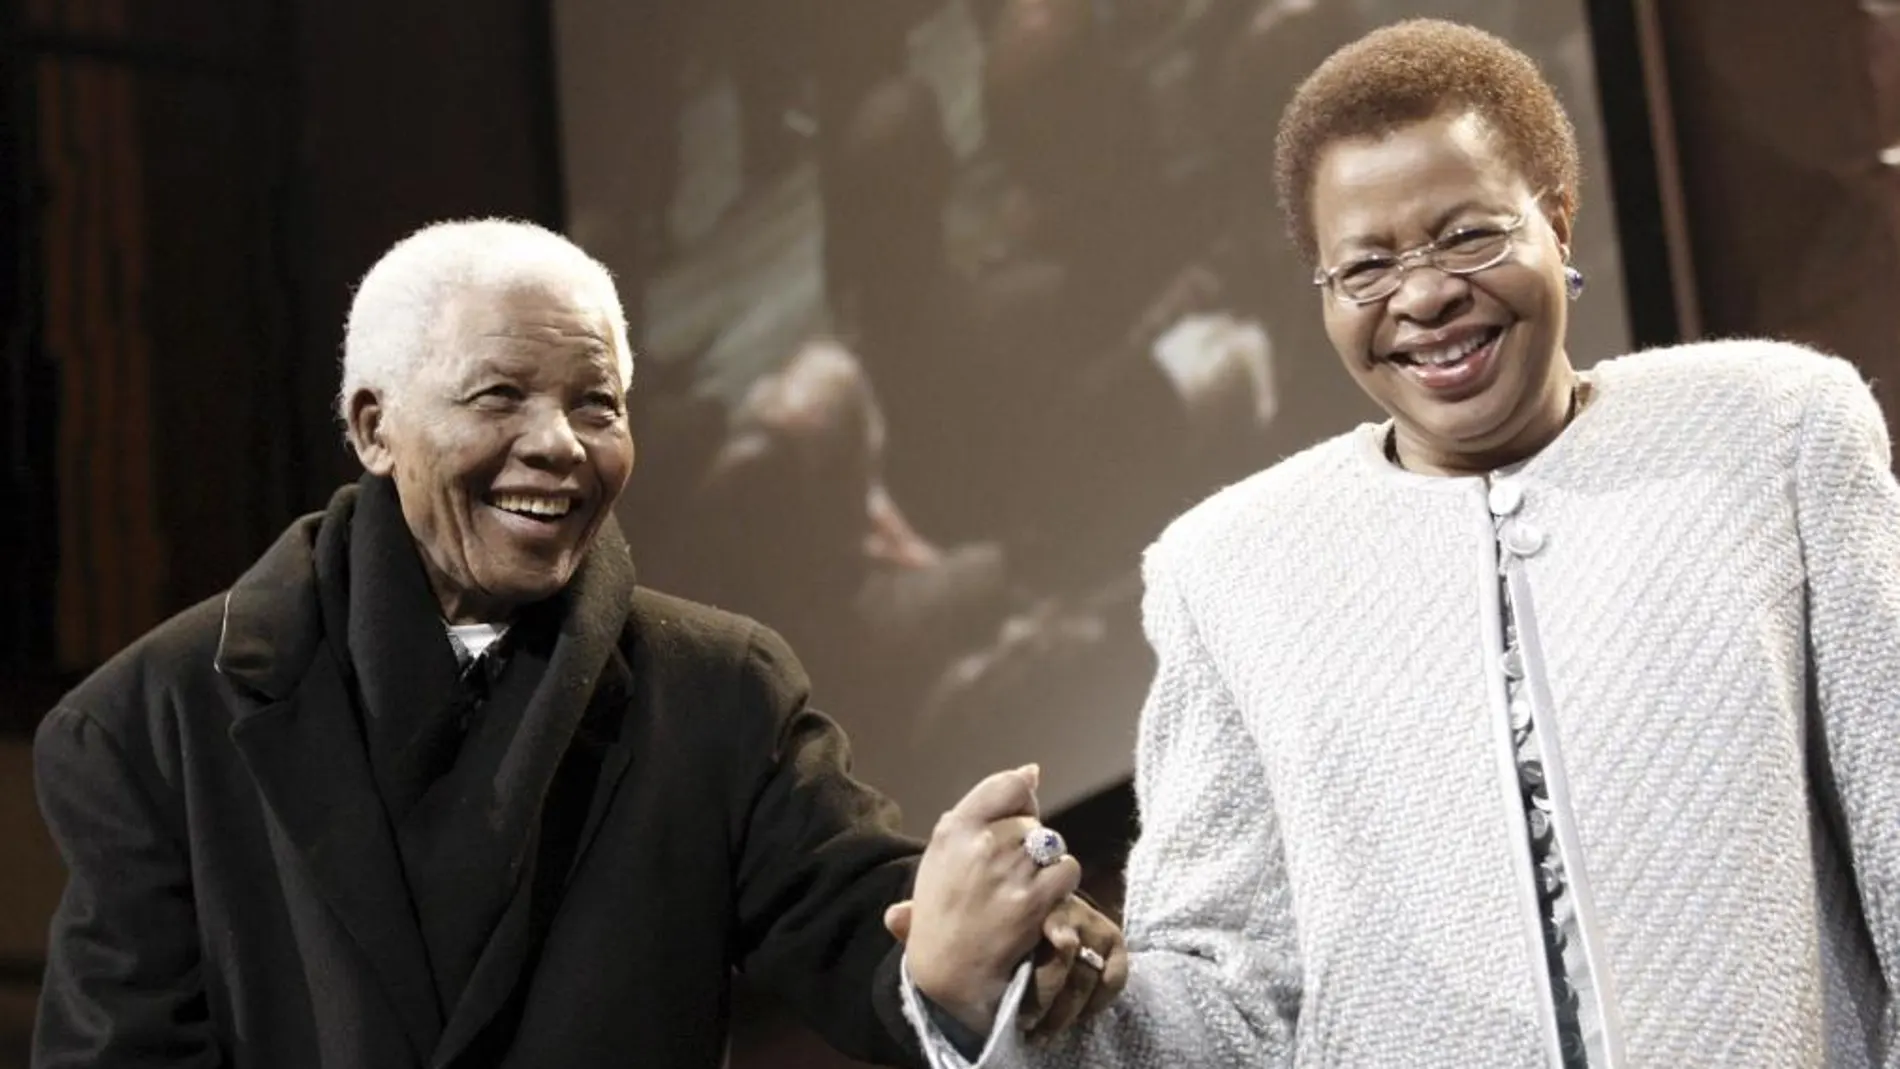 Fotografía de archivo del 12 de julio de 2008 que muestra al Premio Nobel de Paz sudafricano Nelson Mandela (i) junto a su esposa Graca Machel (d) mientras participan en la lectura de honor por el cumpleaños 90 de Mandela, en Johanesurgo (Sudáfrica). El expresidente sudafricano Nelson Mandela murió a los 95 años, informó la Presidencia de Sudáfrica hoy, jueves 5 de diciembre de 2013. EFE/KIM LUDBROOK